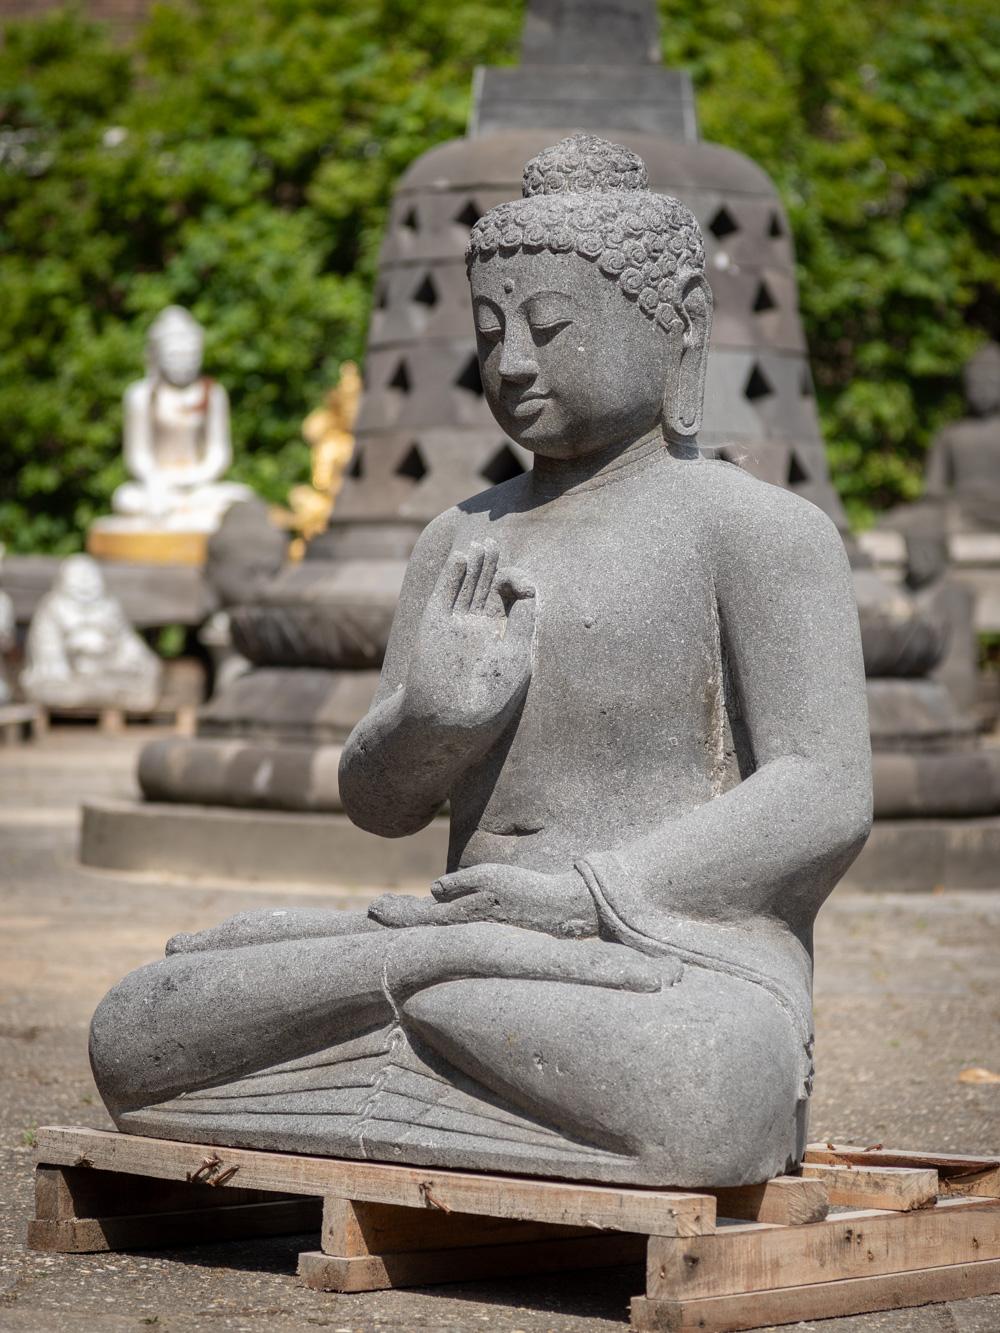 Die große Lavastein-Buddha-Statue aus Indonesien ist ein bemerkenswertes Zeugnis künstlerischen Könnens und spiritueller Darstellung. Die aus einem einzigen Lavasteinblock handgeschnitzte Statue hat eine beeindruckende Höhe von 107 cm und misst 87